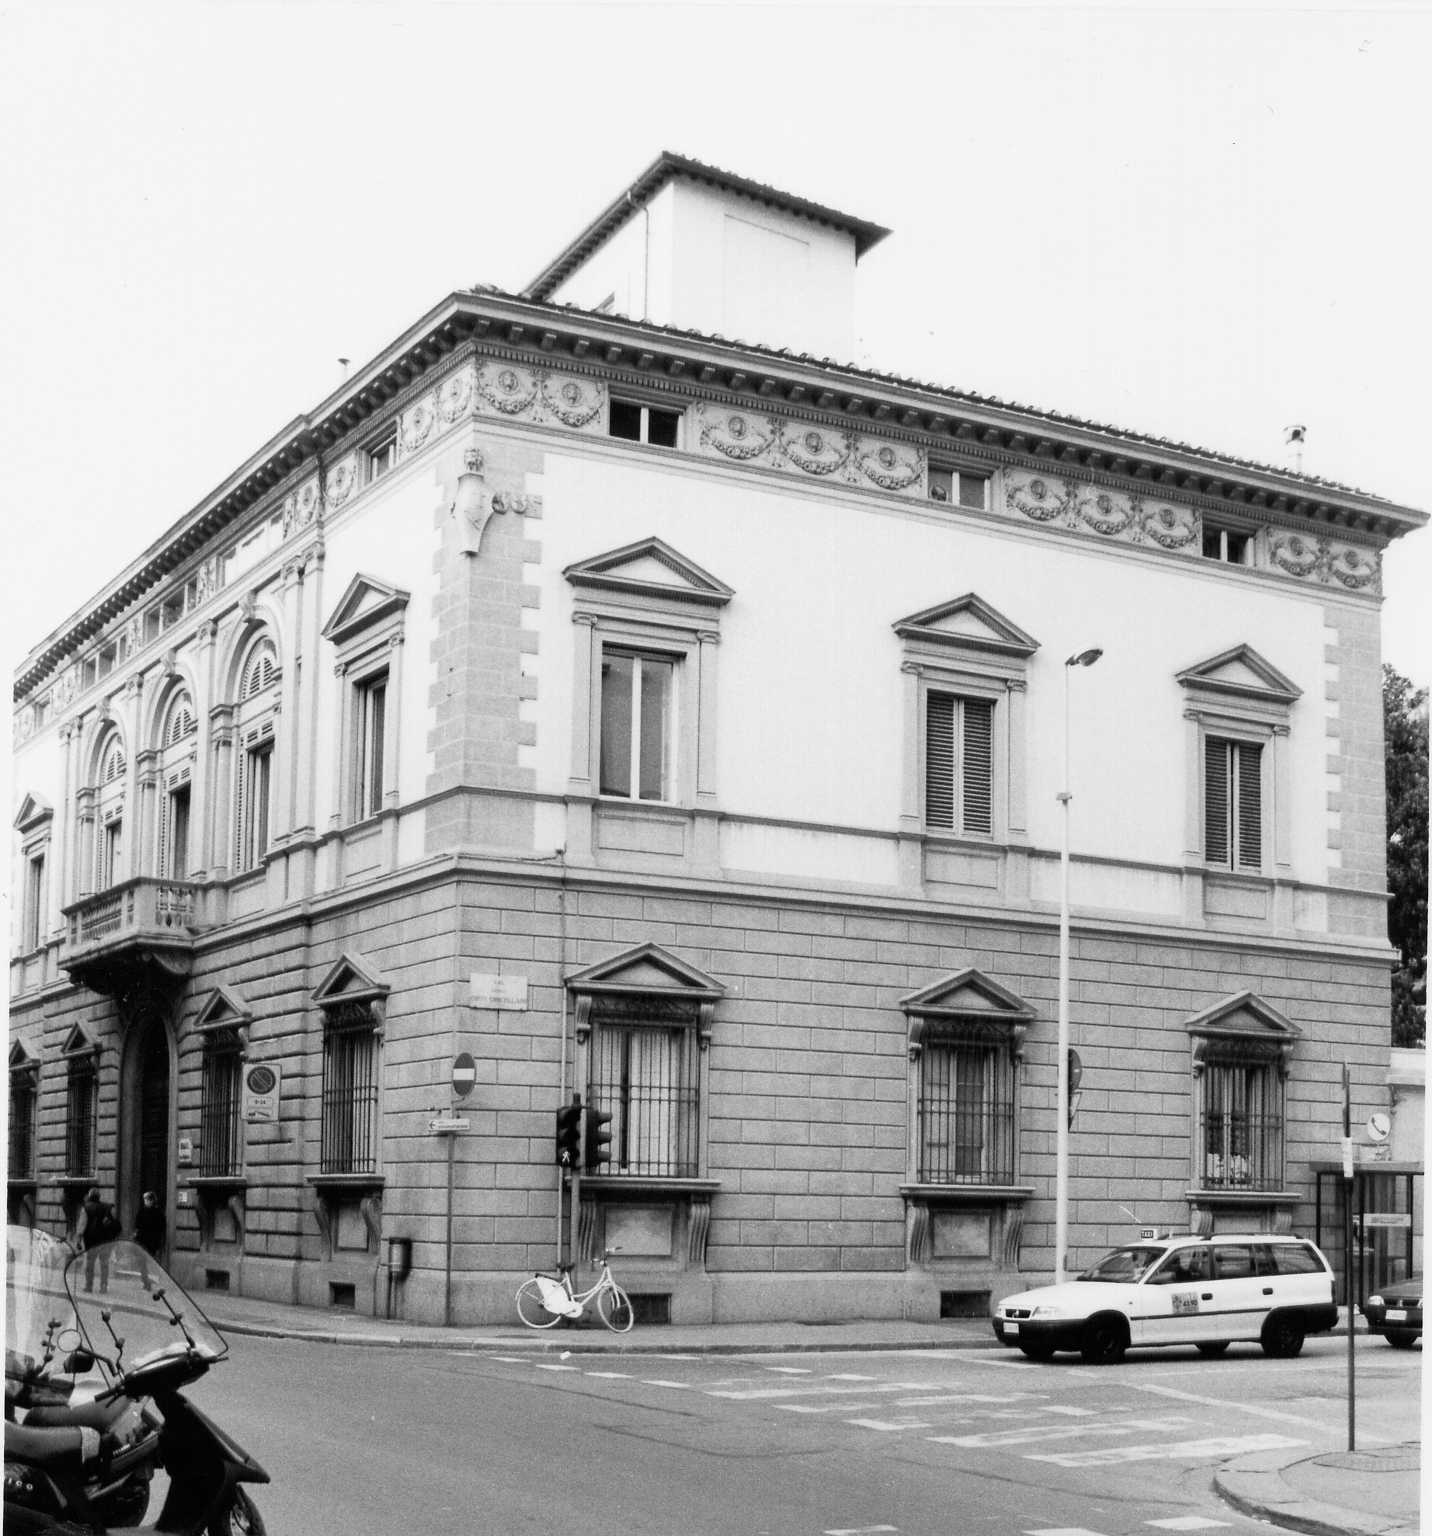 Sede n°3 I.N.A.I.L. Firenze (palazzo, pubblico) - Firenze (FI)  (XIX, fine)